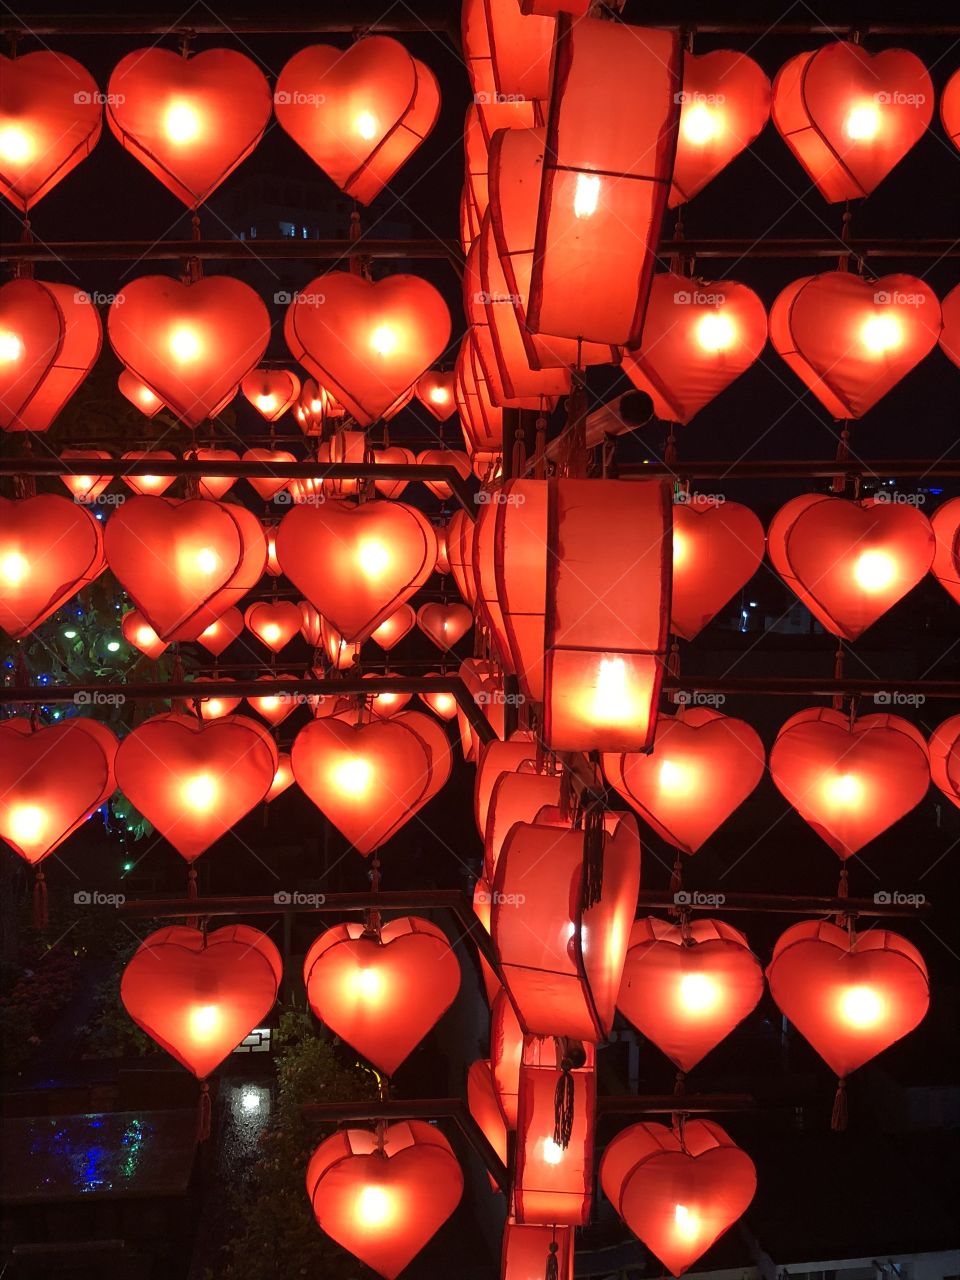 Illuminated hearts